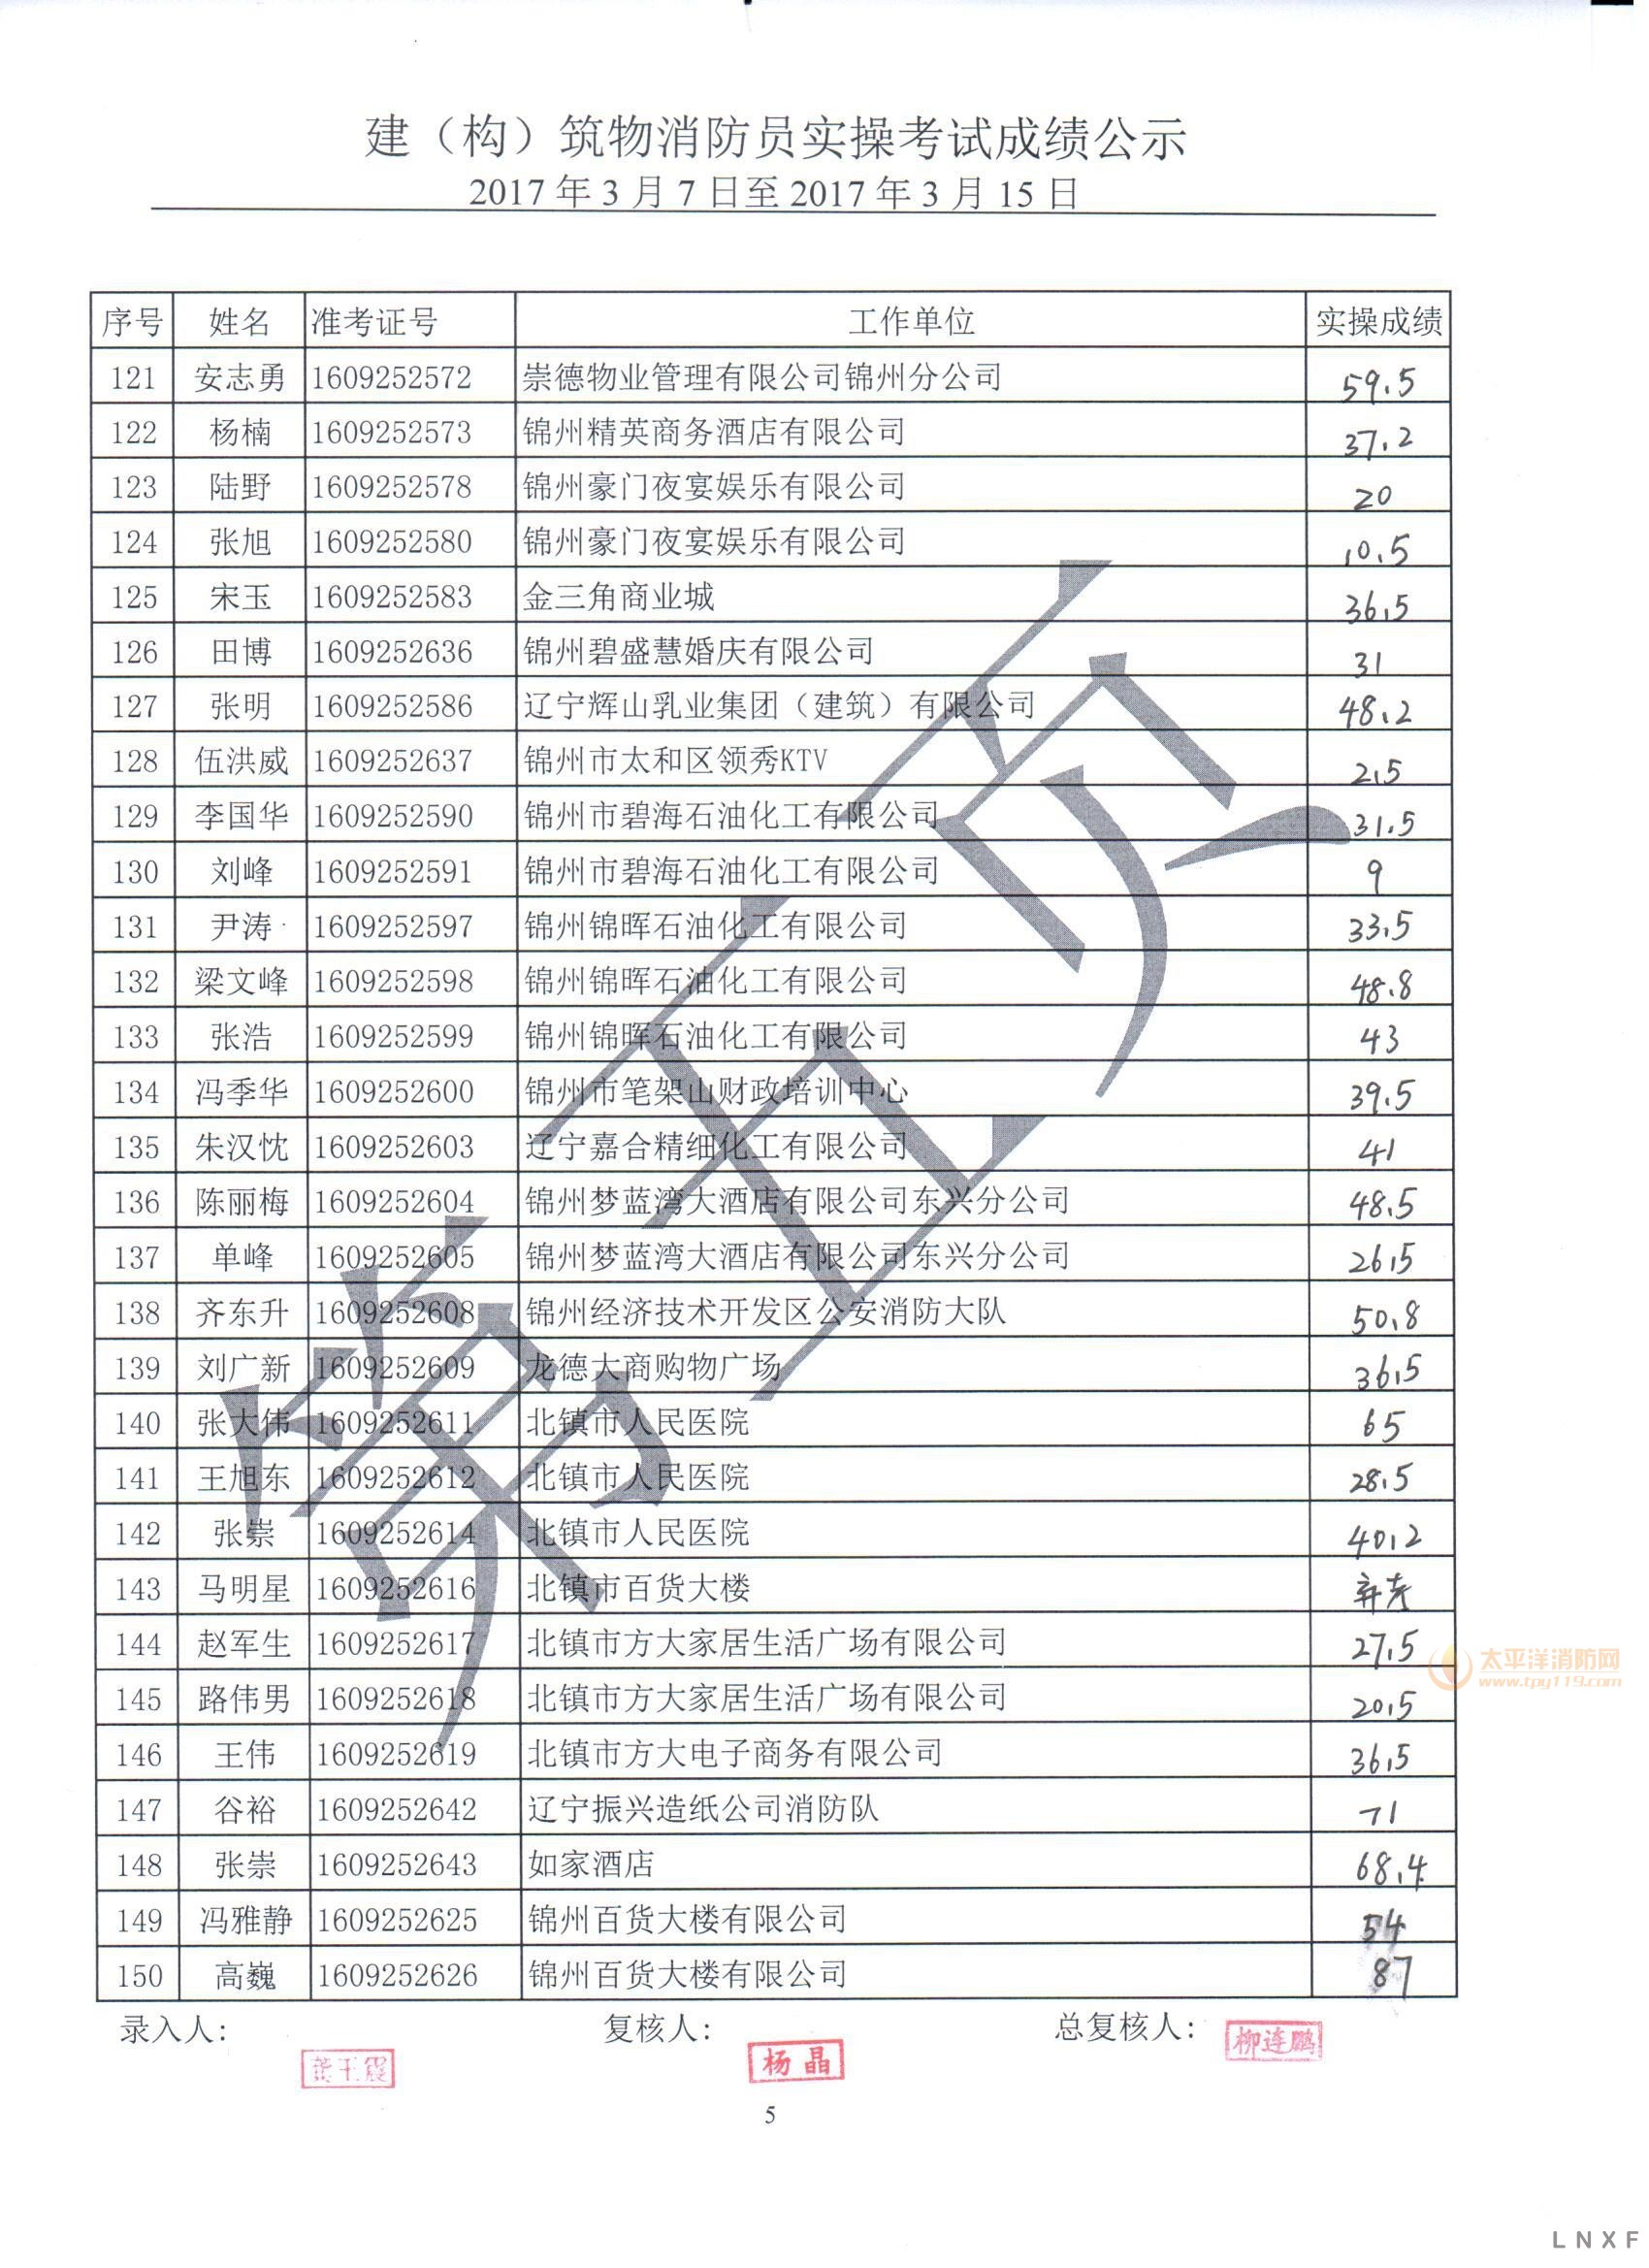 辽宁2017年（3.07-03.15） 建构筑物消防员实操考试成绩公示